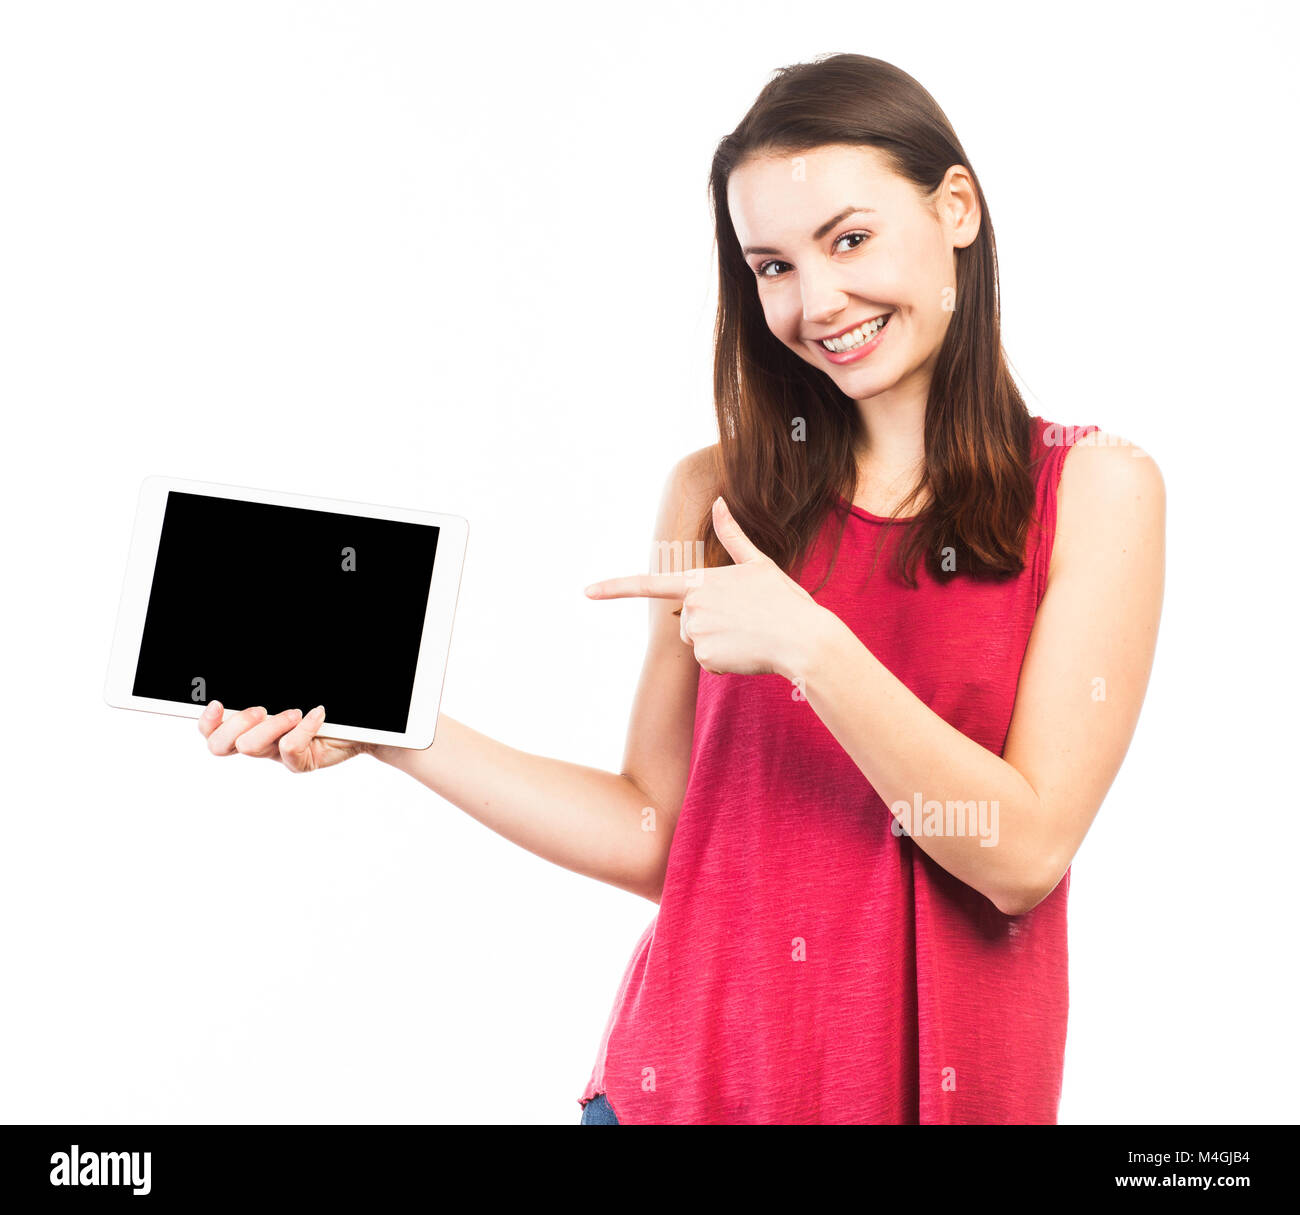 Lächelnde Frau mit und zeigen Sie den leeren Bildschirm eines elektronischen Tablet, auf weissem isoliert Stockfoto